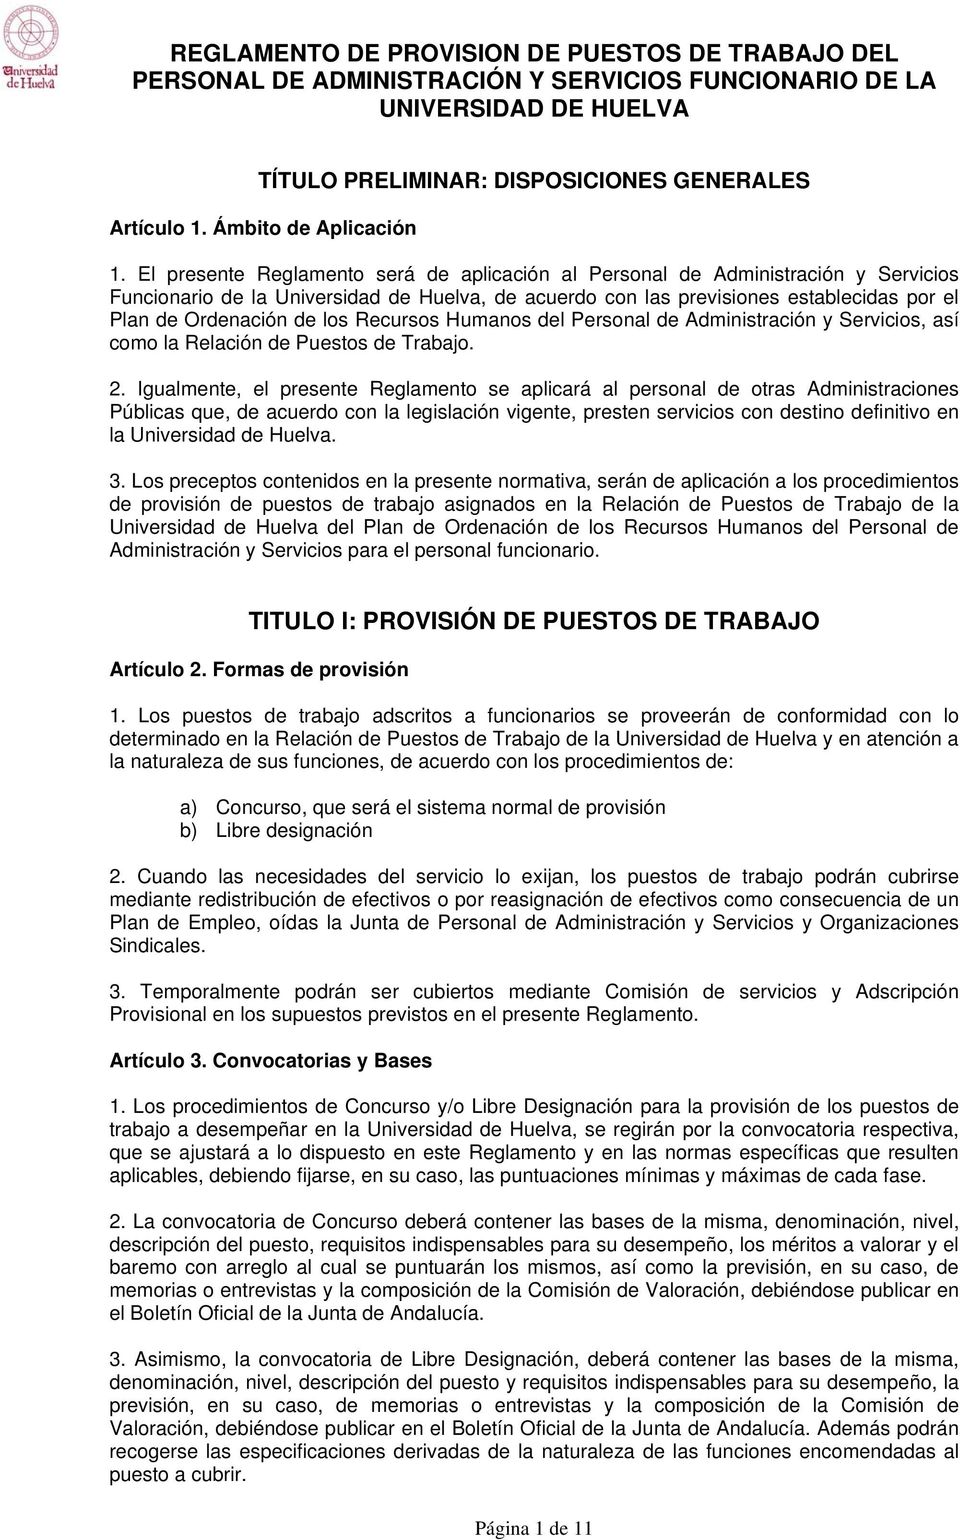 El presente Reglamento será de aplicación al Personal de Administración y Servicios Funcionario de la Universidad de Huelva, de acuerdo con las previsiones establecidas por el Plan de Ordenación de